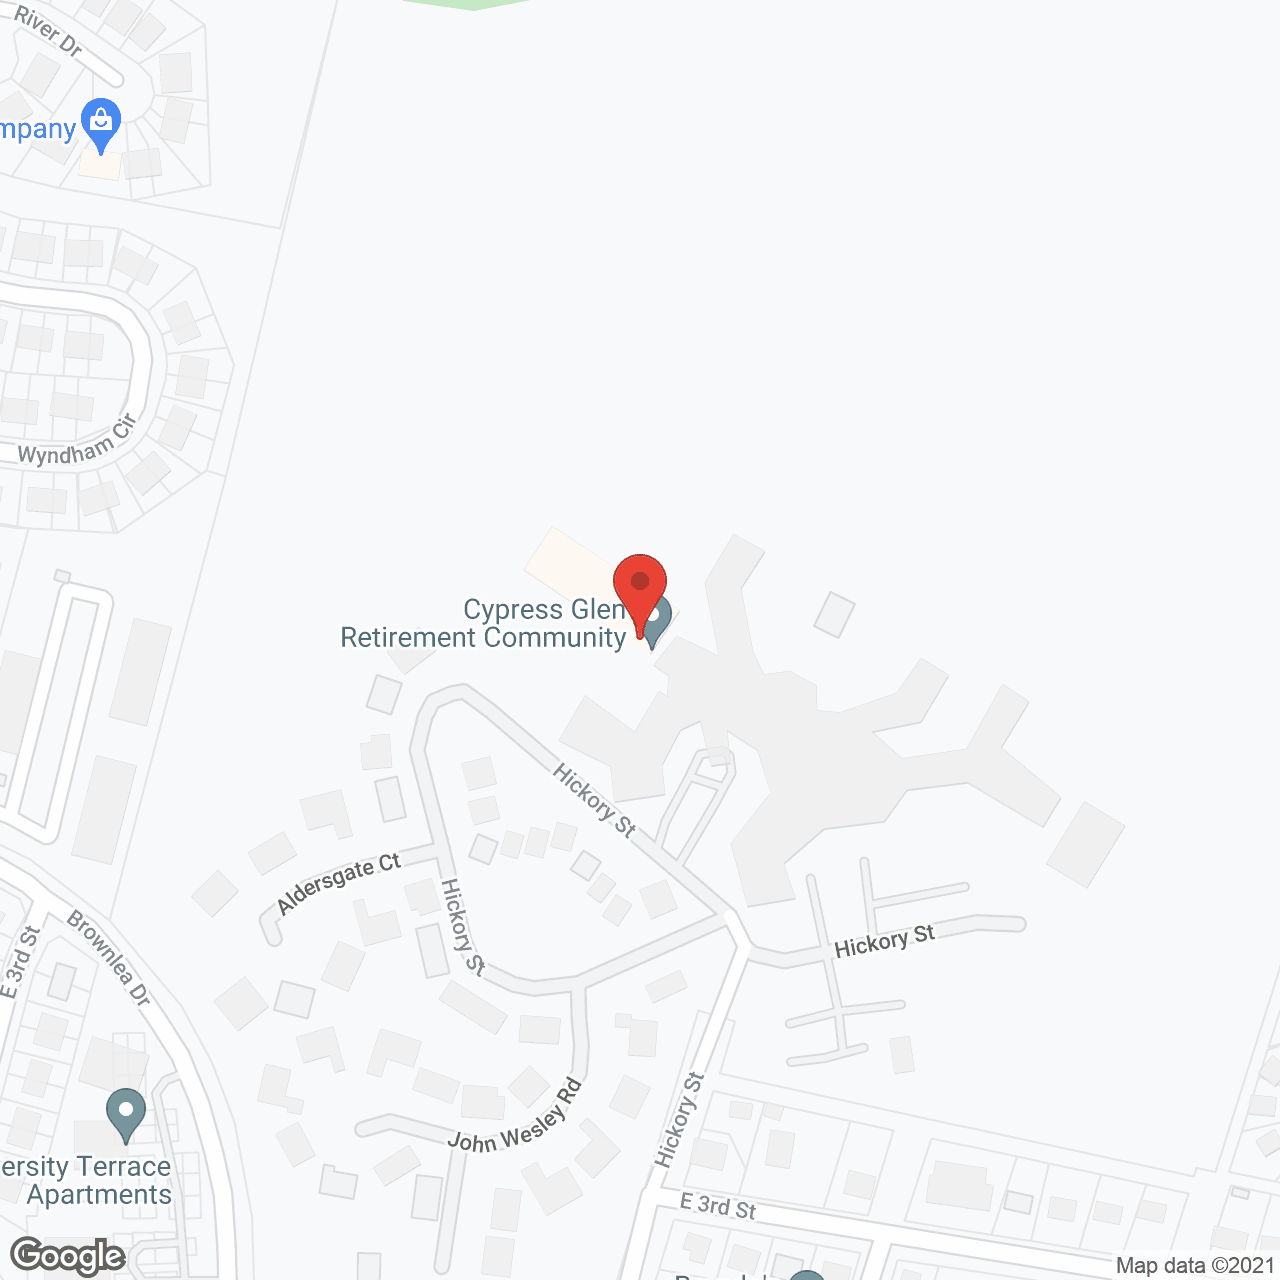 Cypress Glen in google map